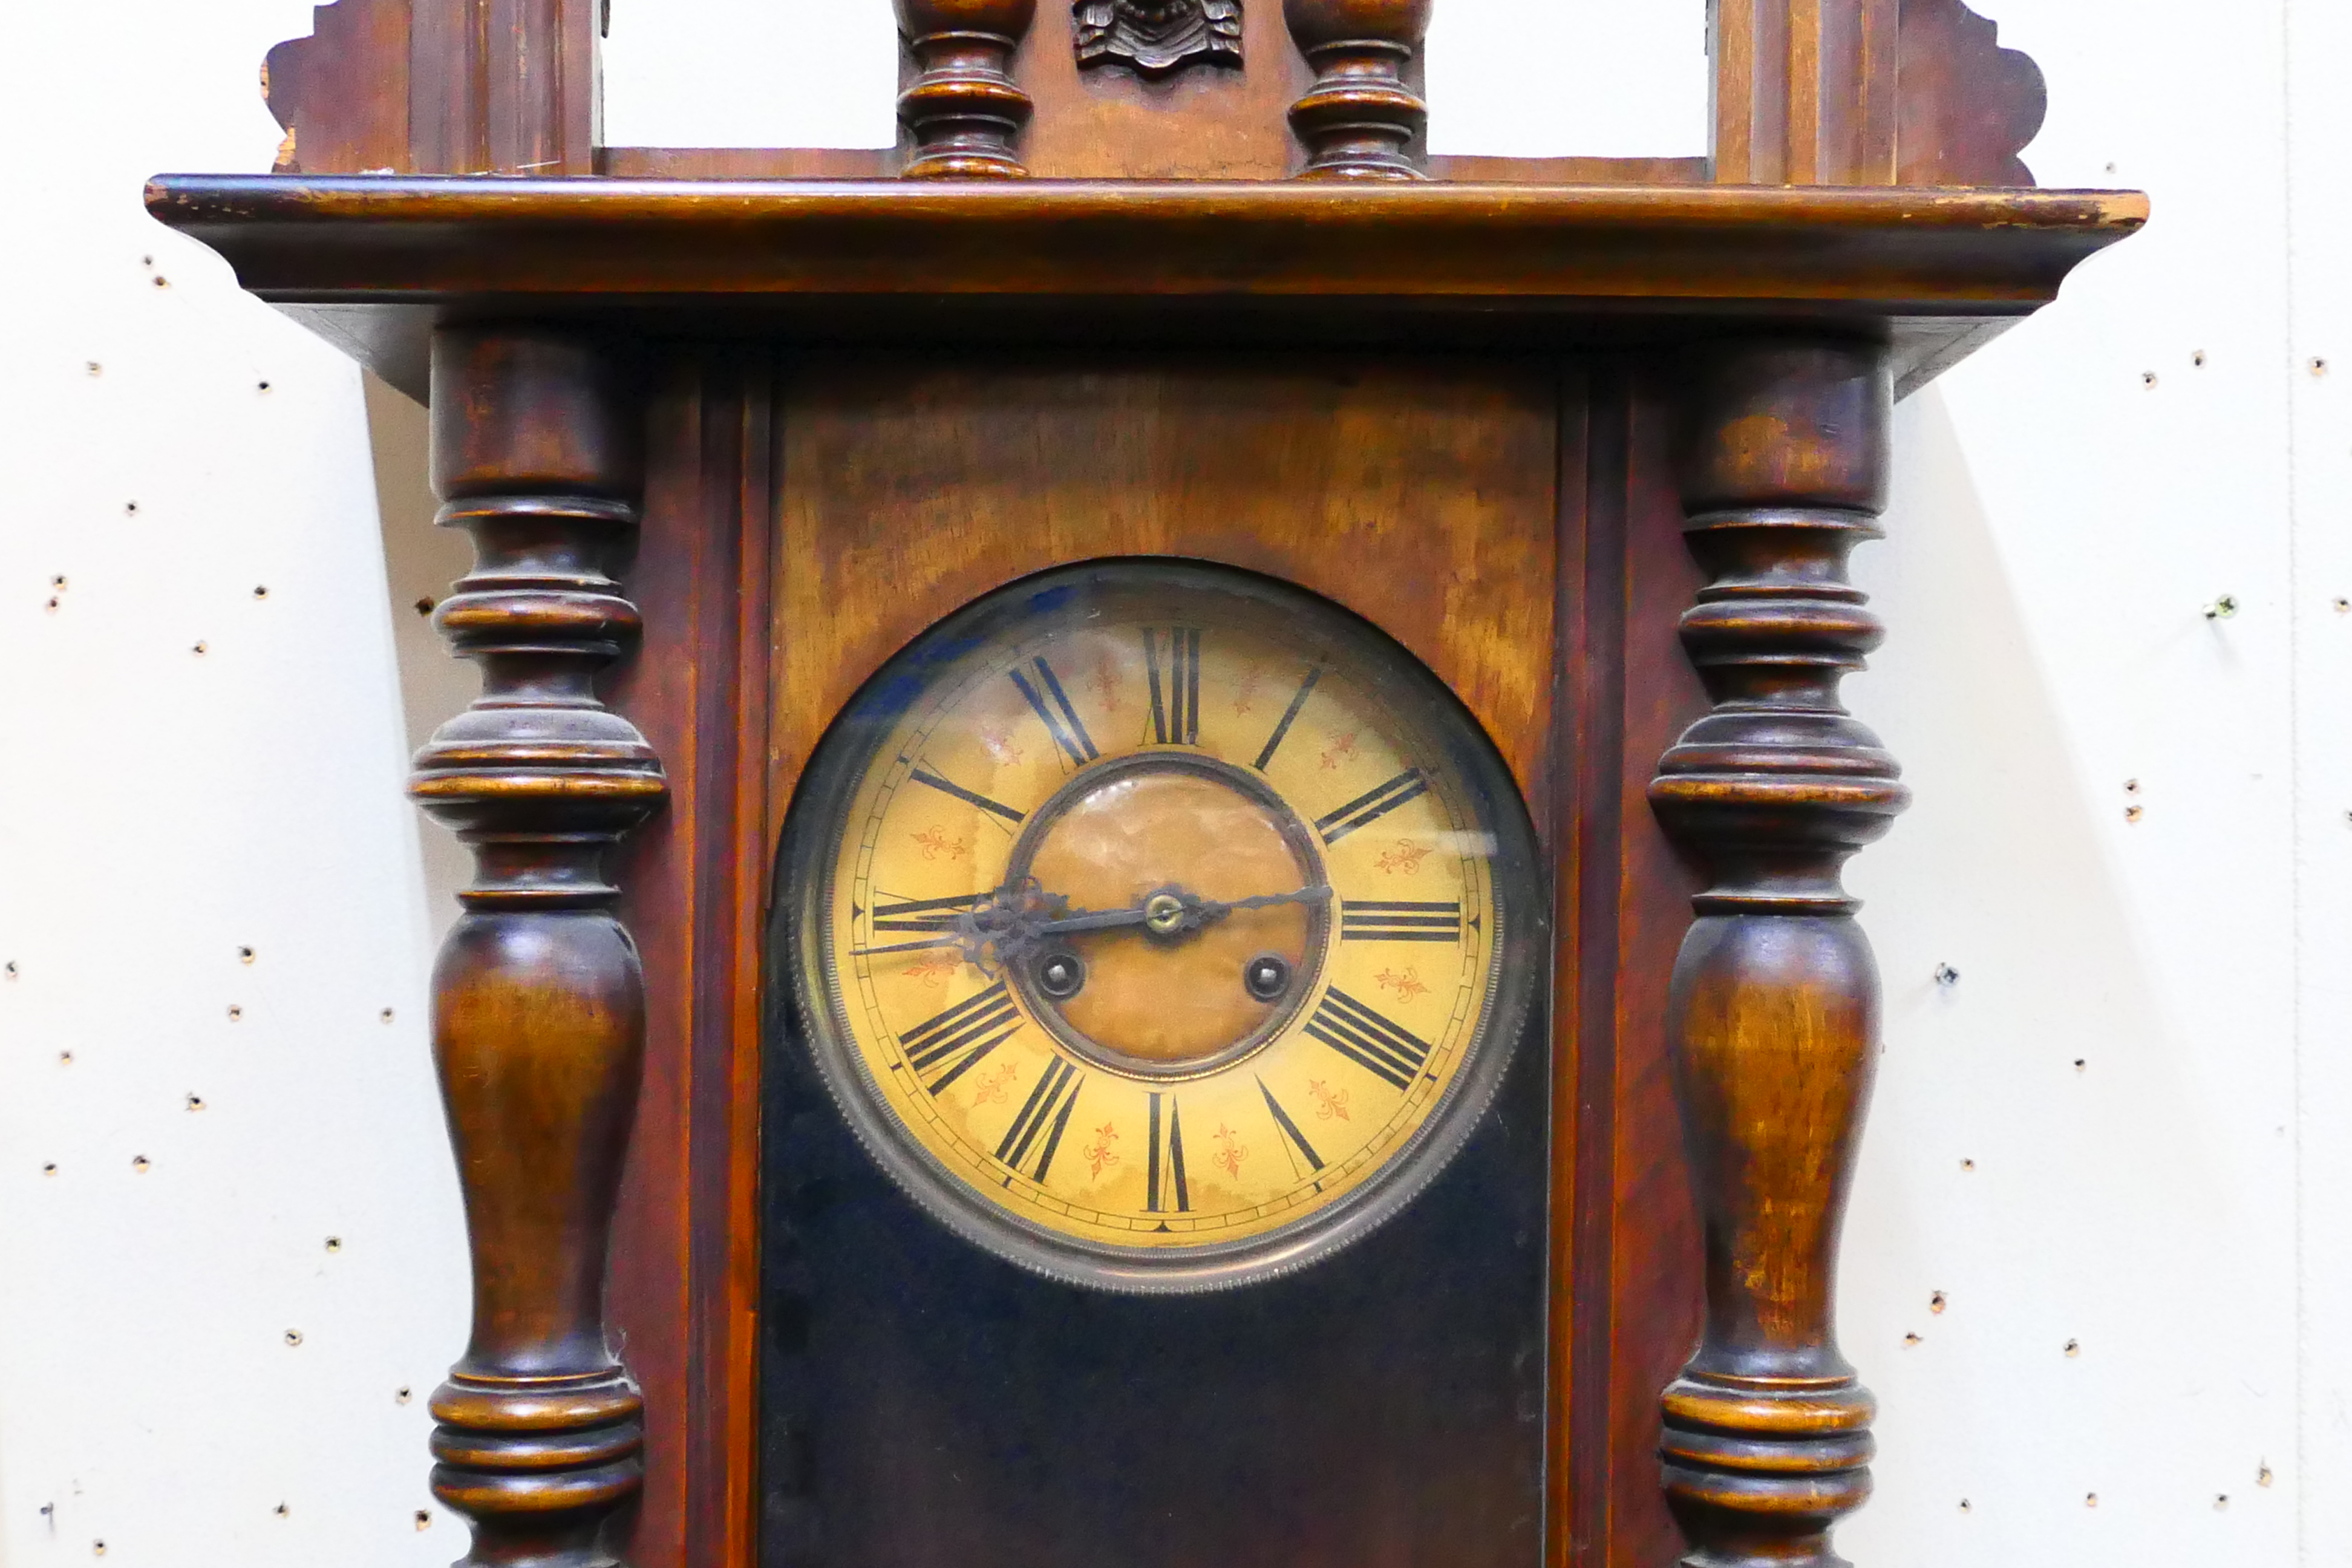 A Vienna-style wall clock. 124 cm (h) x 43 cm (w) x 20 cm (d), with key and pendulum. - Image 3 of 7